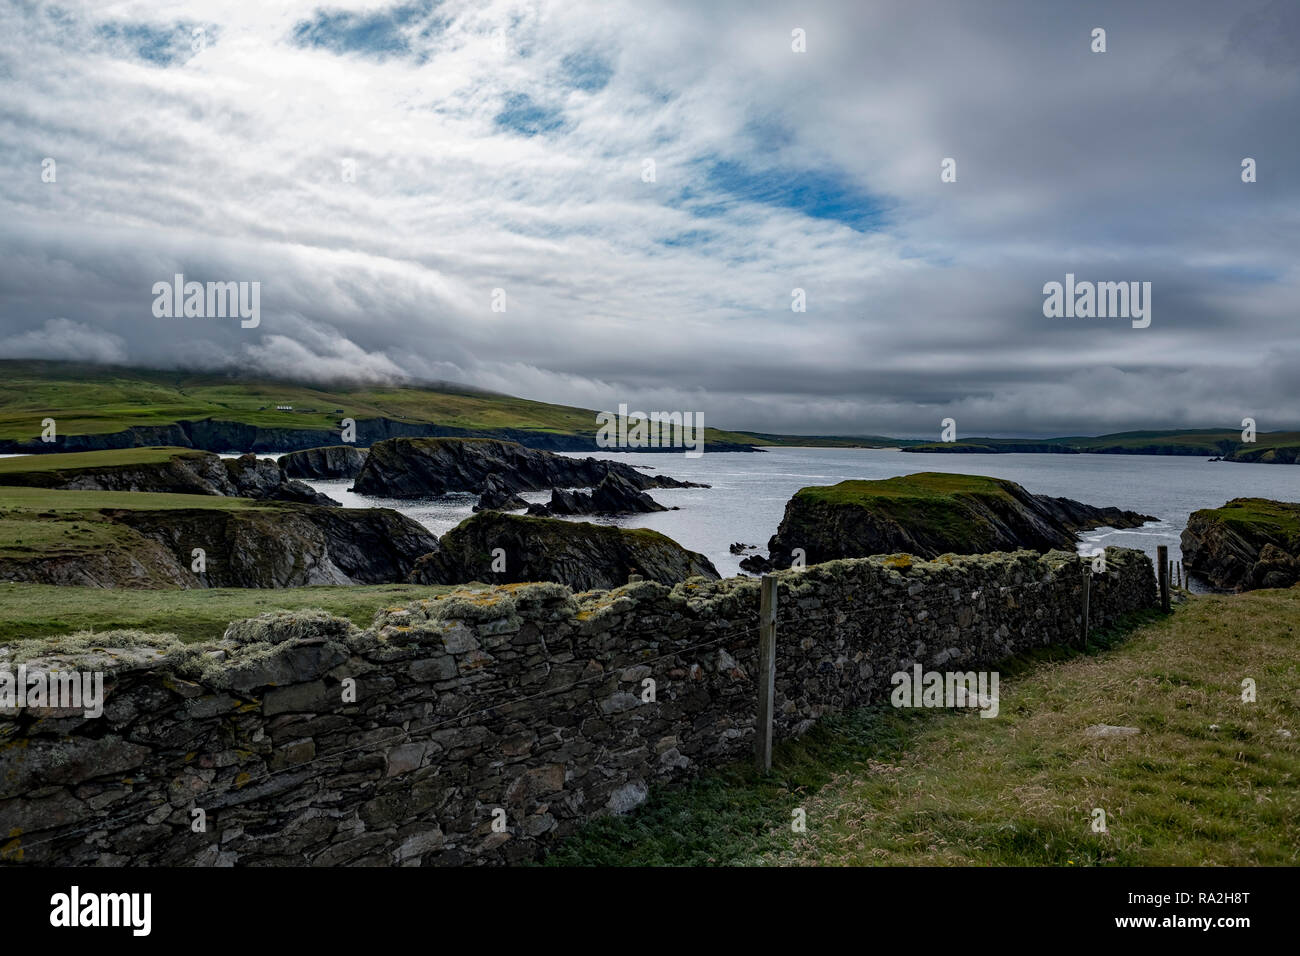 Stone wal séparant des pâturages sur un croft donnant sur l'Océan Atlantique sur un jour nuageux dans la partie continentale des îles Shetland, de l'Ecosse Banque D'Images